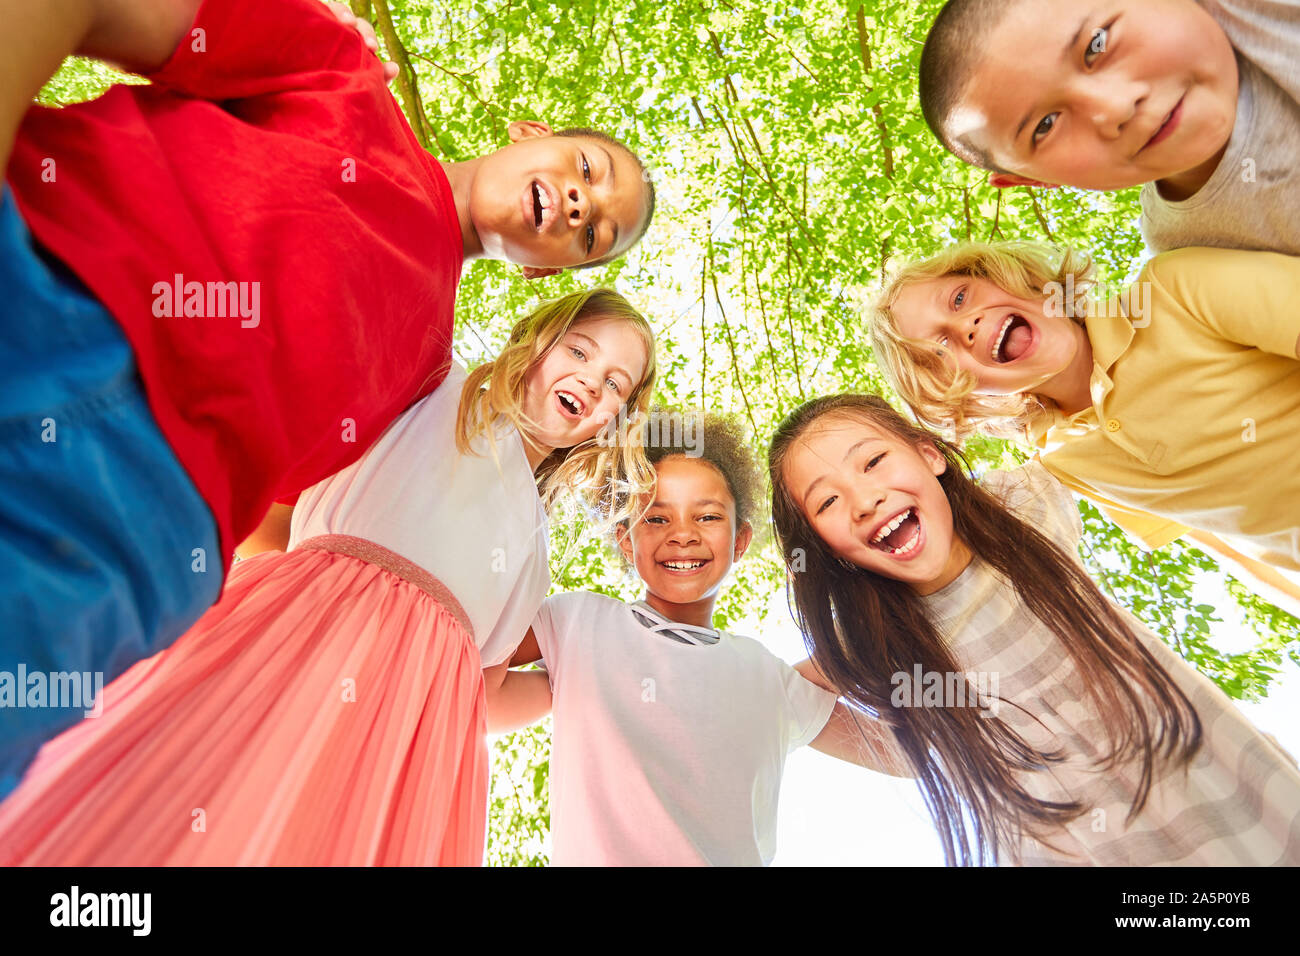 Multikulturelle Kinder lachen zusammen für Teamgeist und Integration Stockfoto